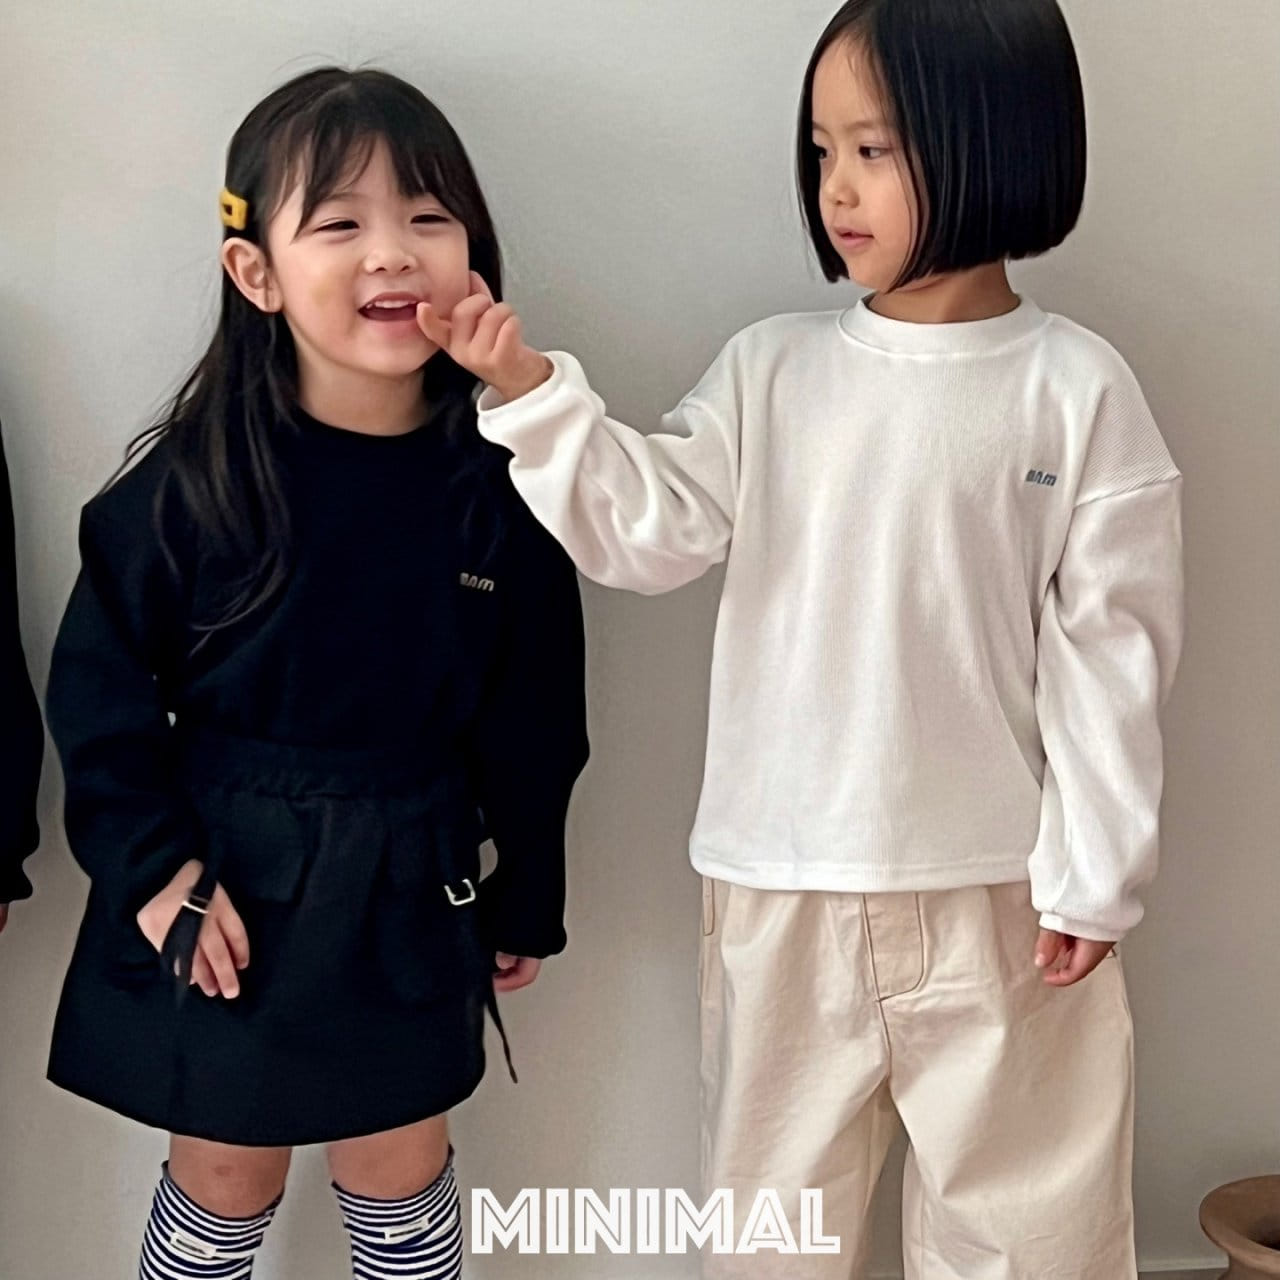 Minimal - Korean Children Fashion - #prettylittlegirls - Embroider Tee - 5